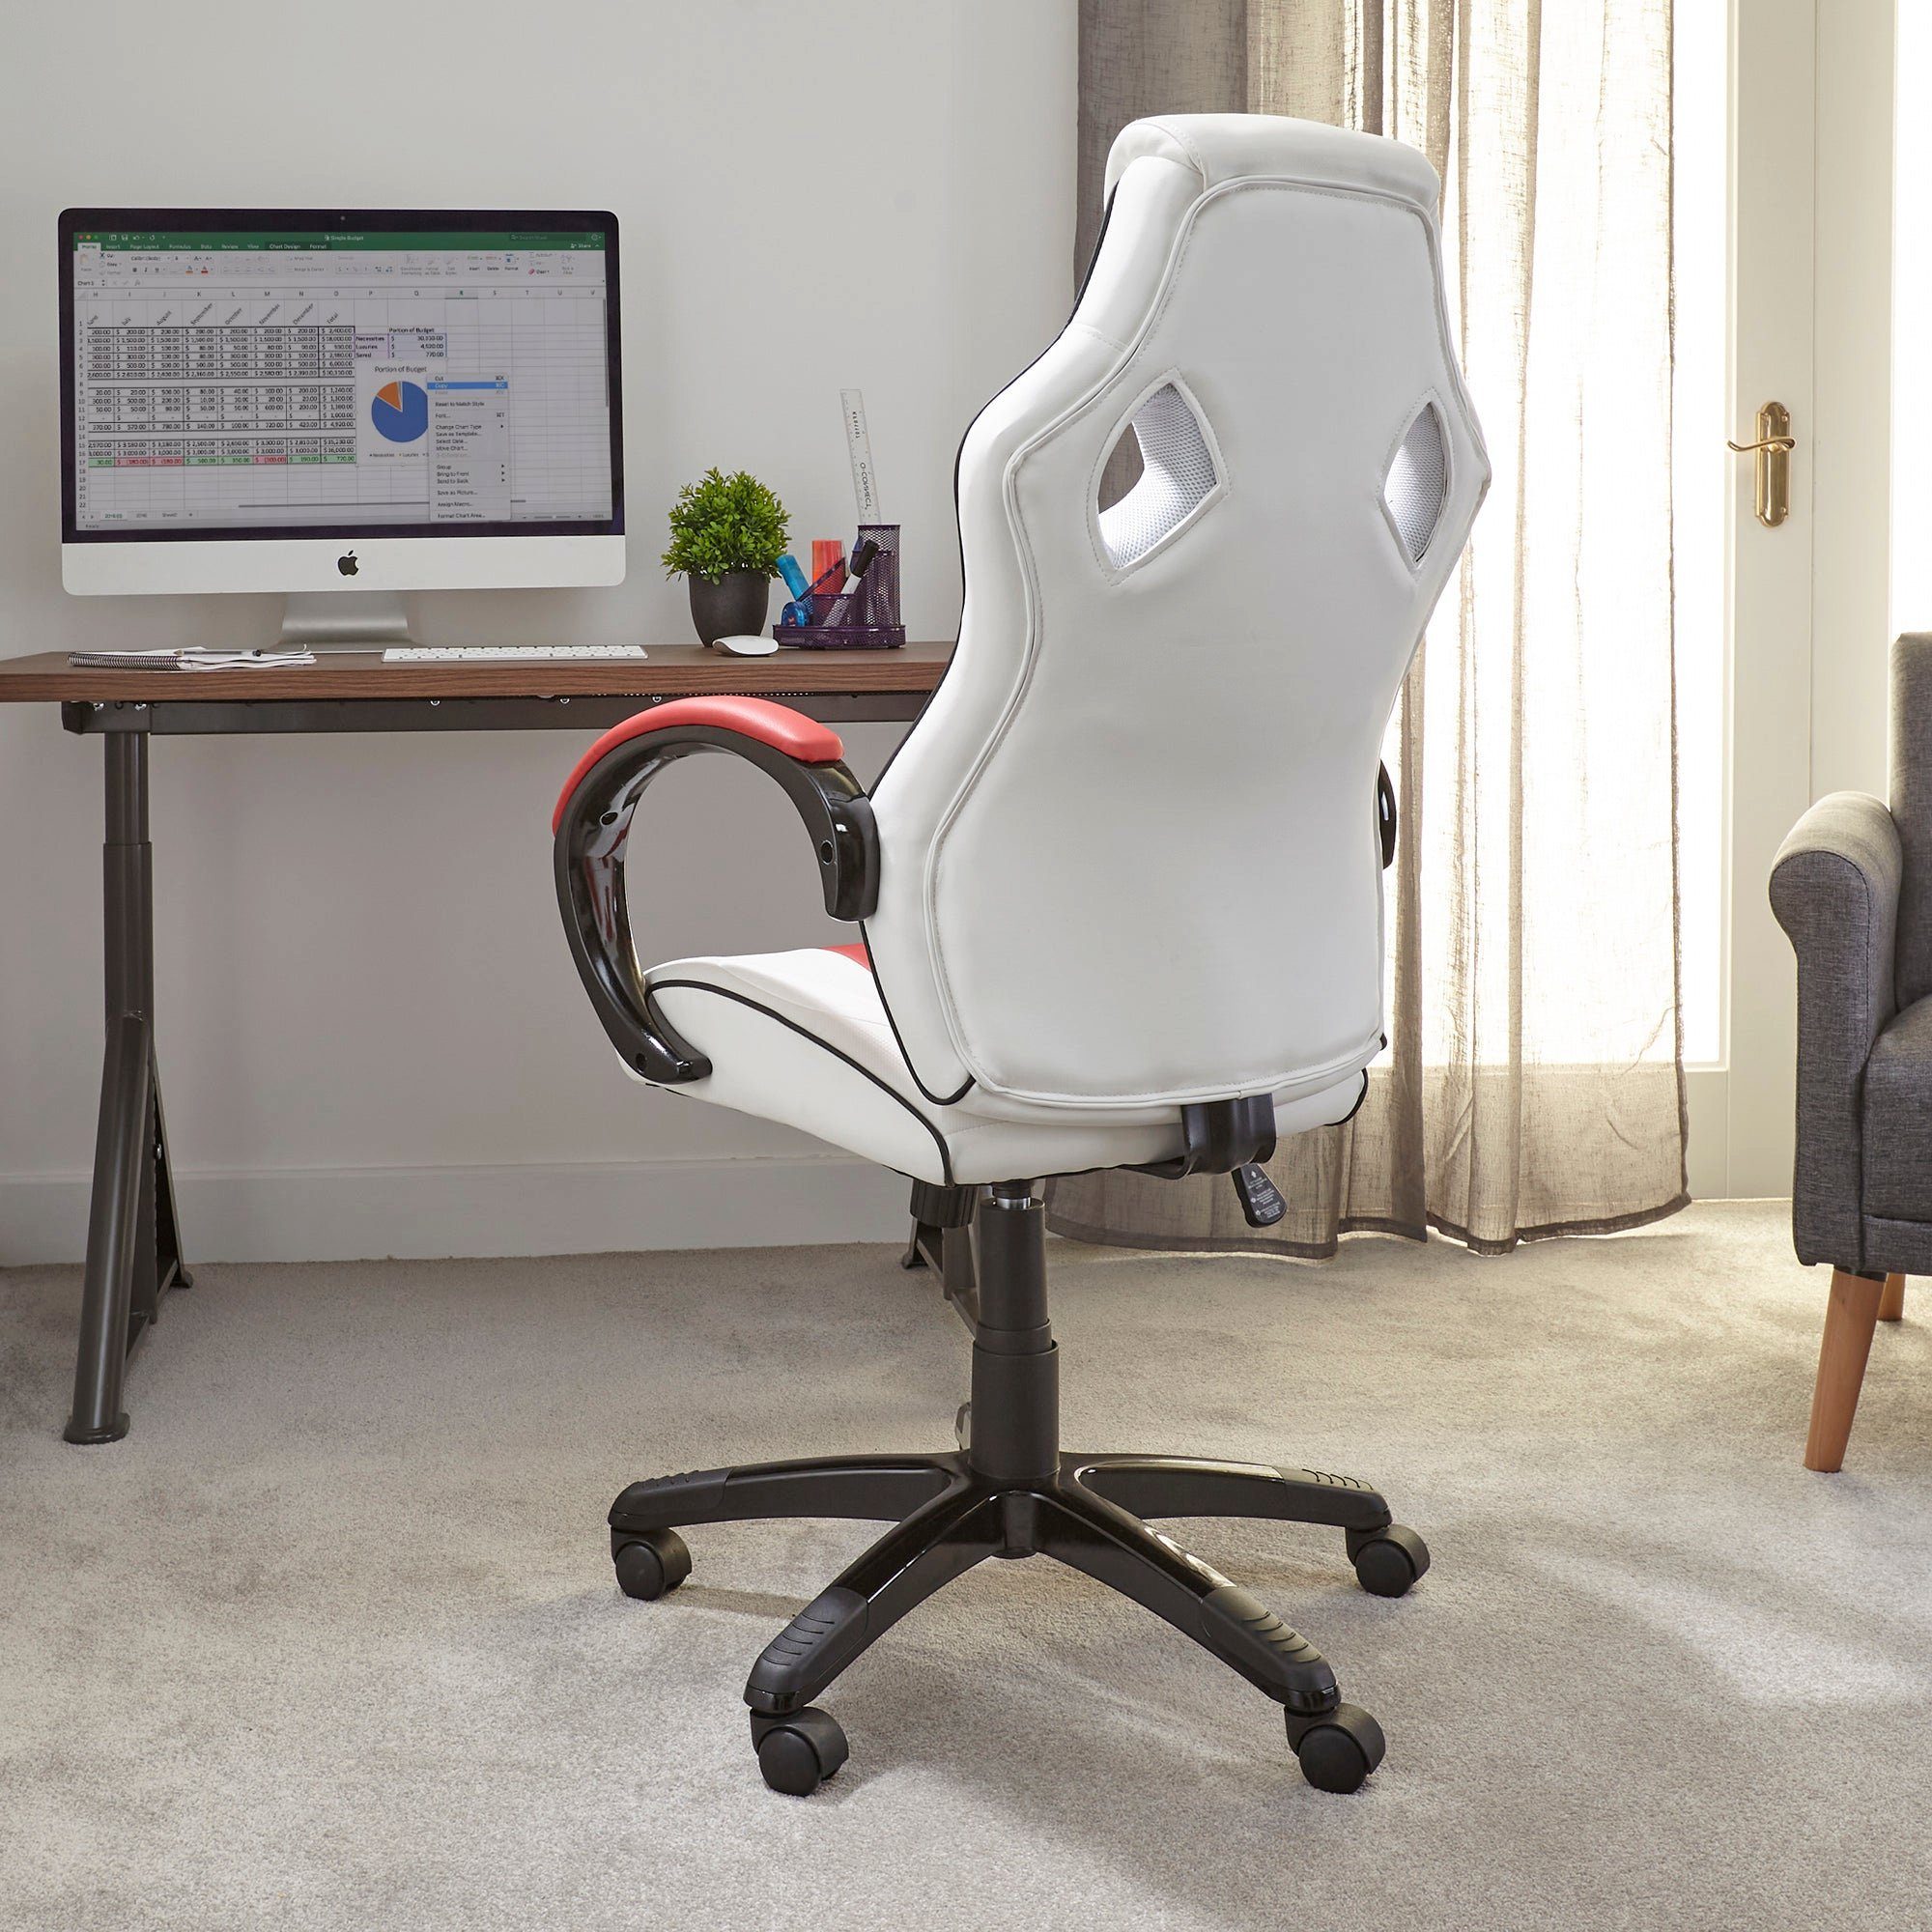 Rocker Jugendliche - Weiß/Rot Bürodrehstuhl für Erwachsene & Maverick X Gaming-Stuhl Ergonomischer